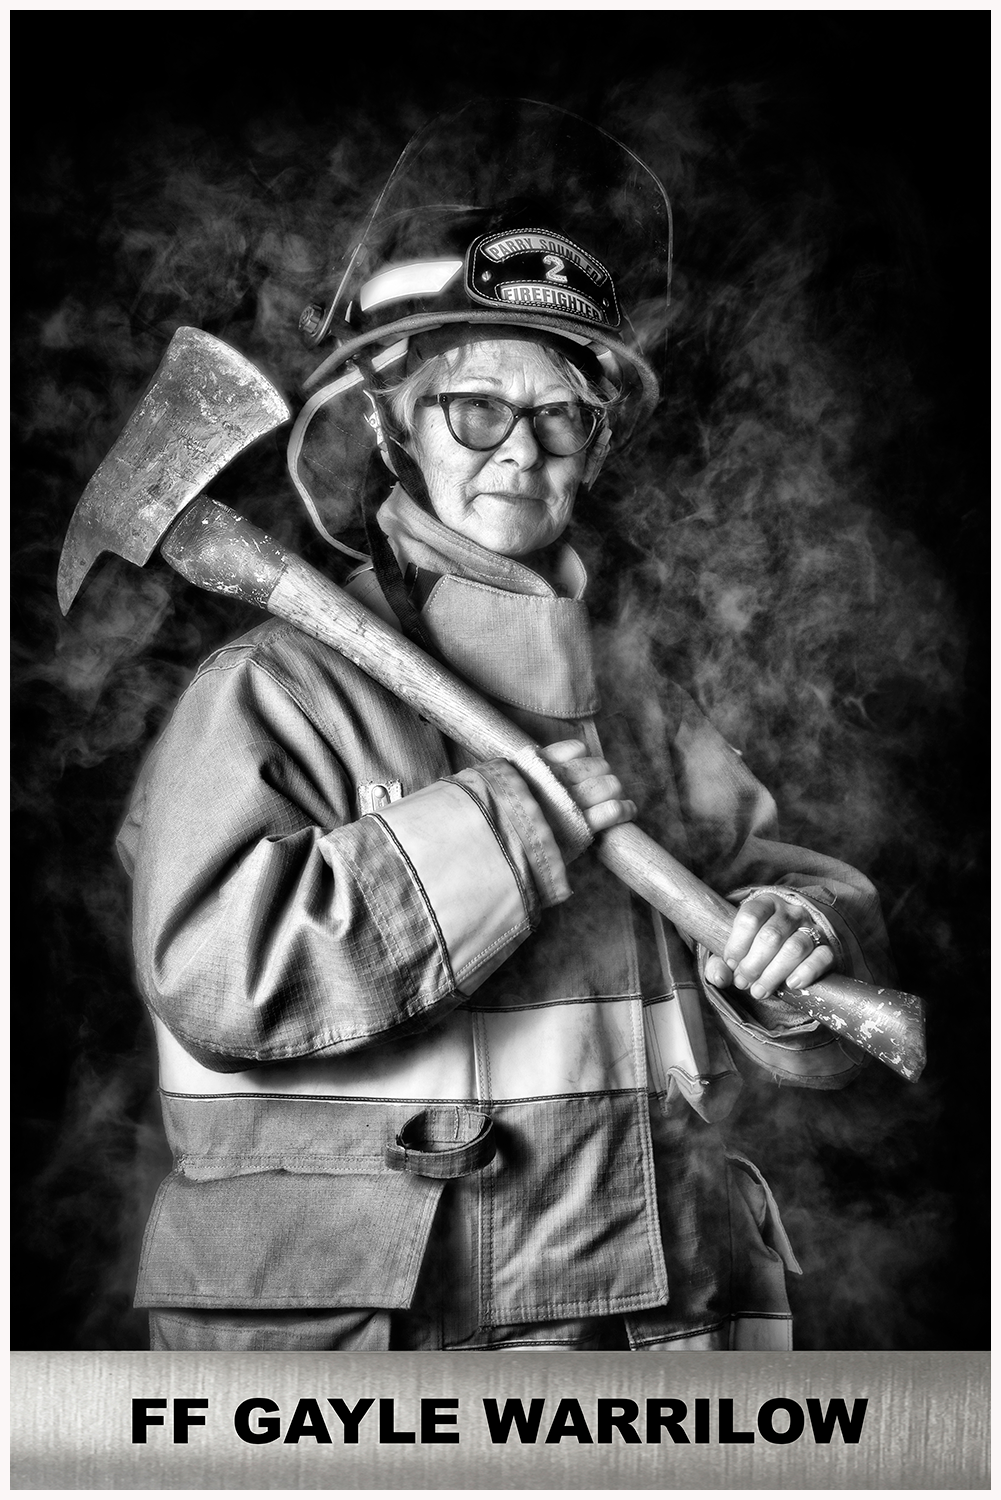 Firefighter Gayle Warrilow